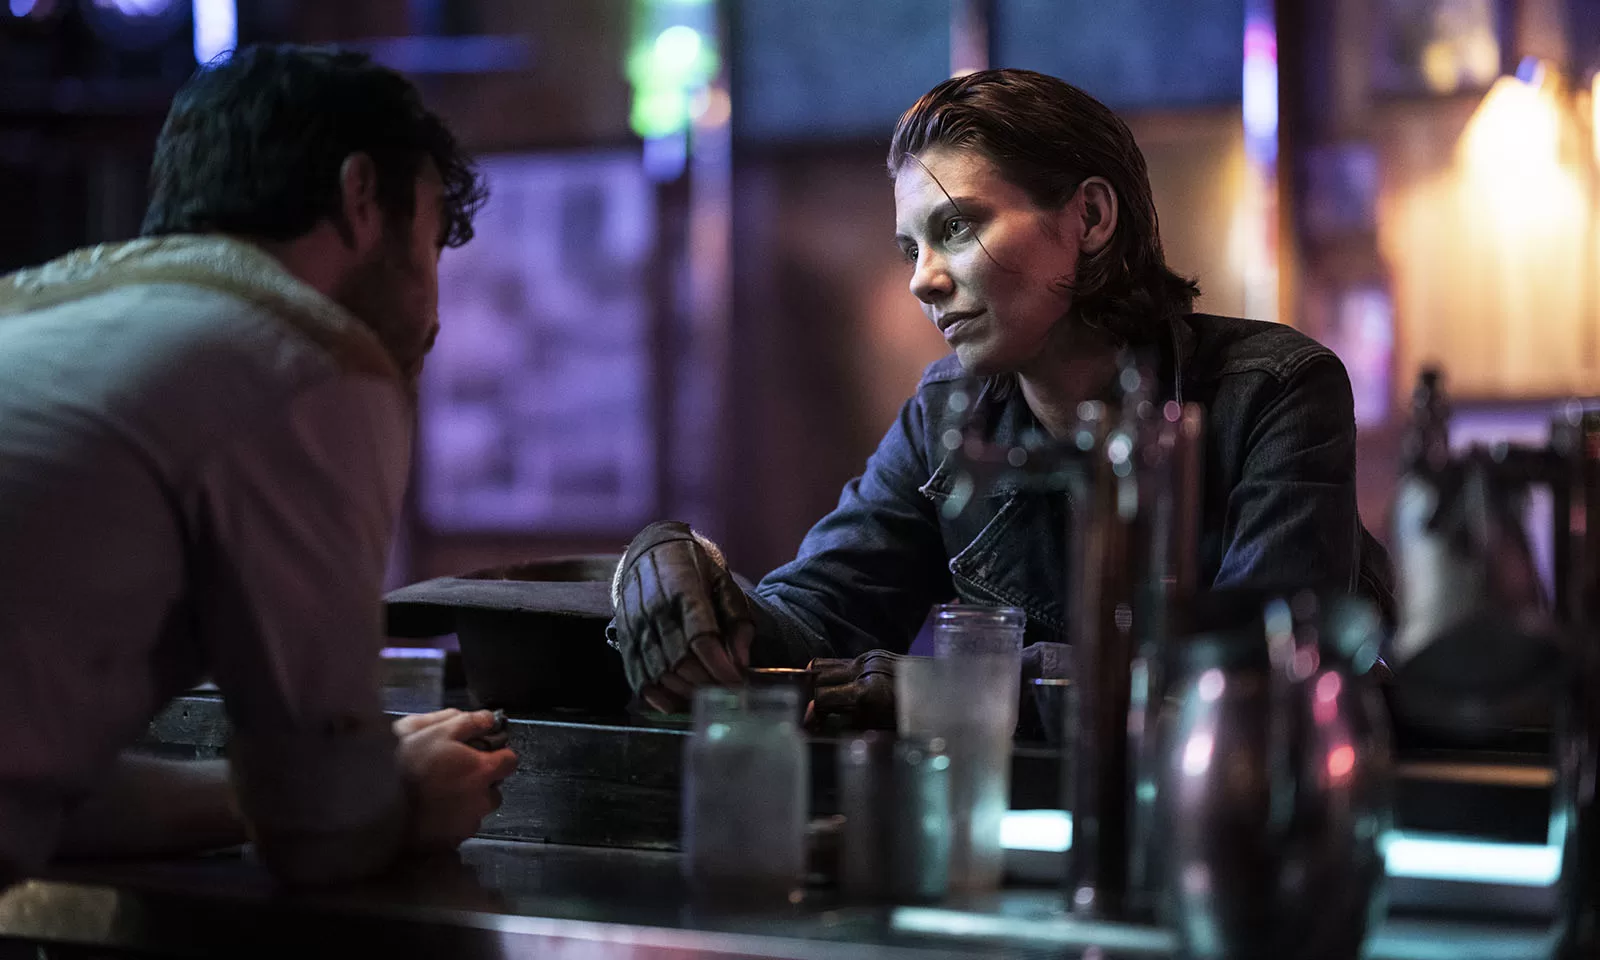 Maggie em um bar conversando com uma pessoa em cena do episódio 1 da 1ª temporada de The Walking Dead: Dead City.